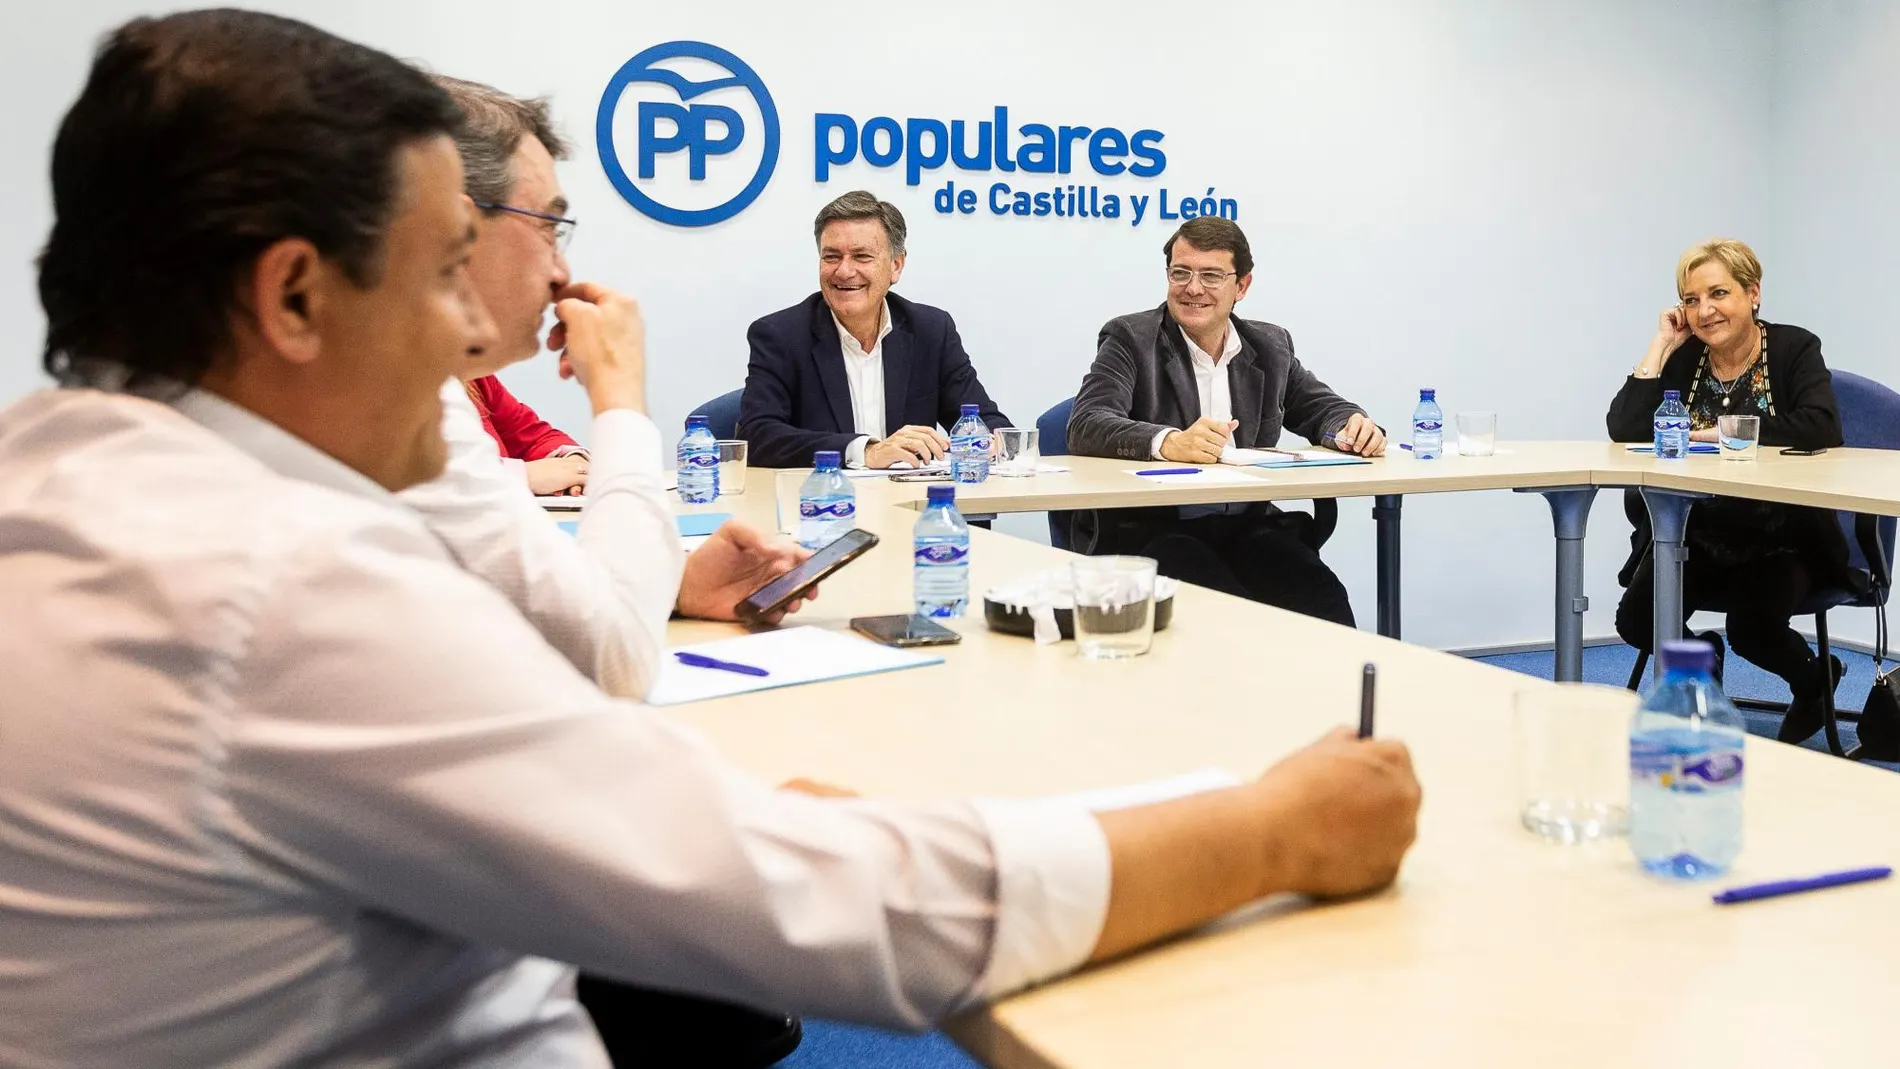 El presidente del PP de Castilla y León, Alfonso Fernández Mañueco, y el secretario general, Francisco Vázquez, se reúnen con los presidentes provinciales